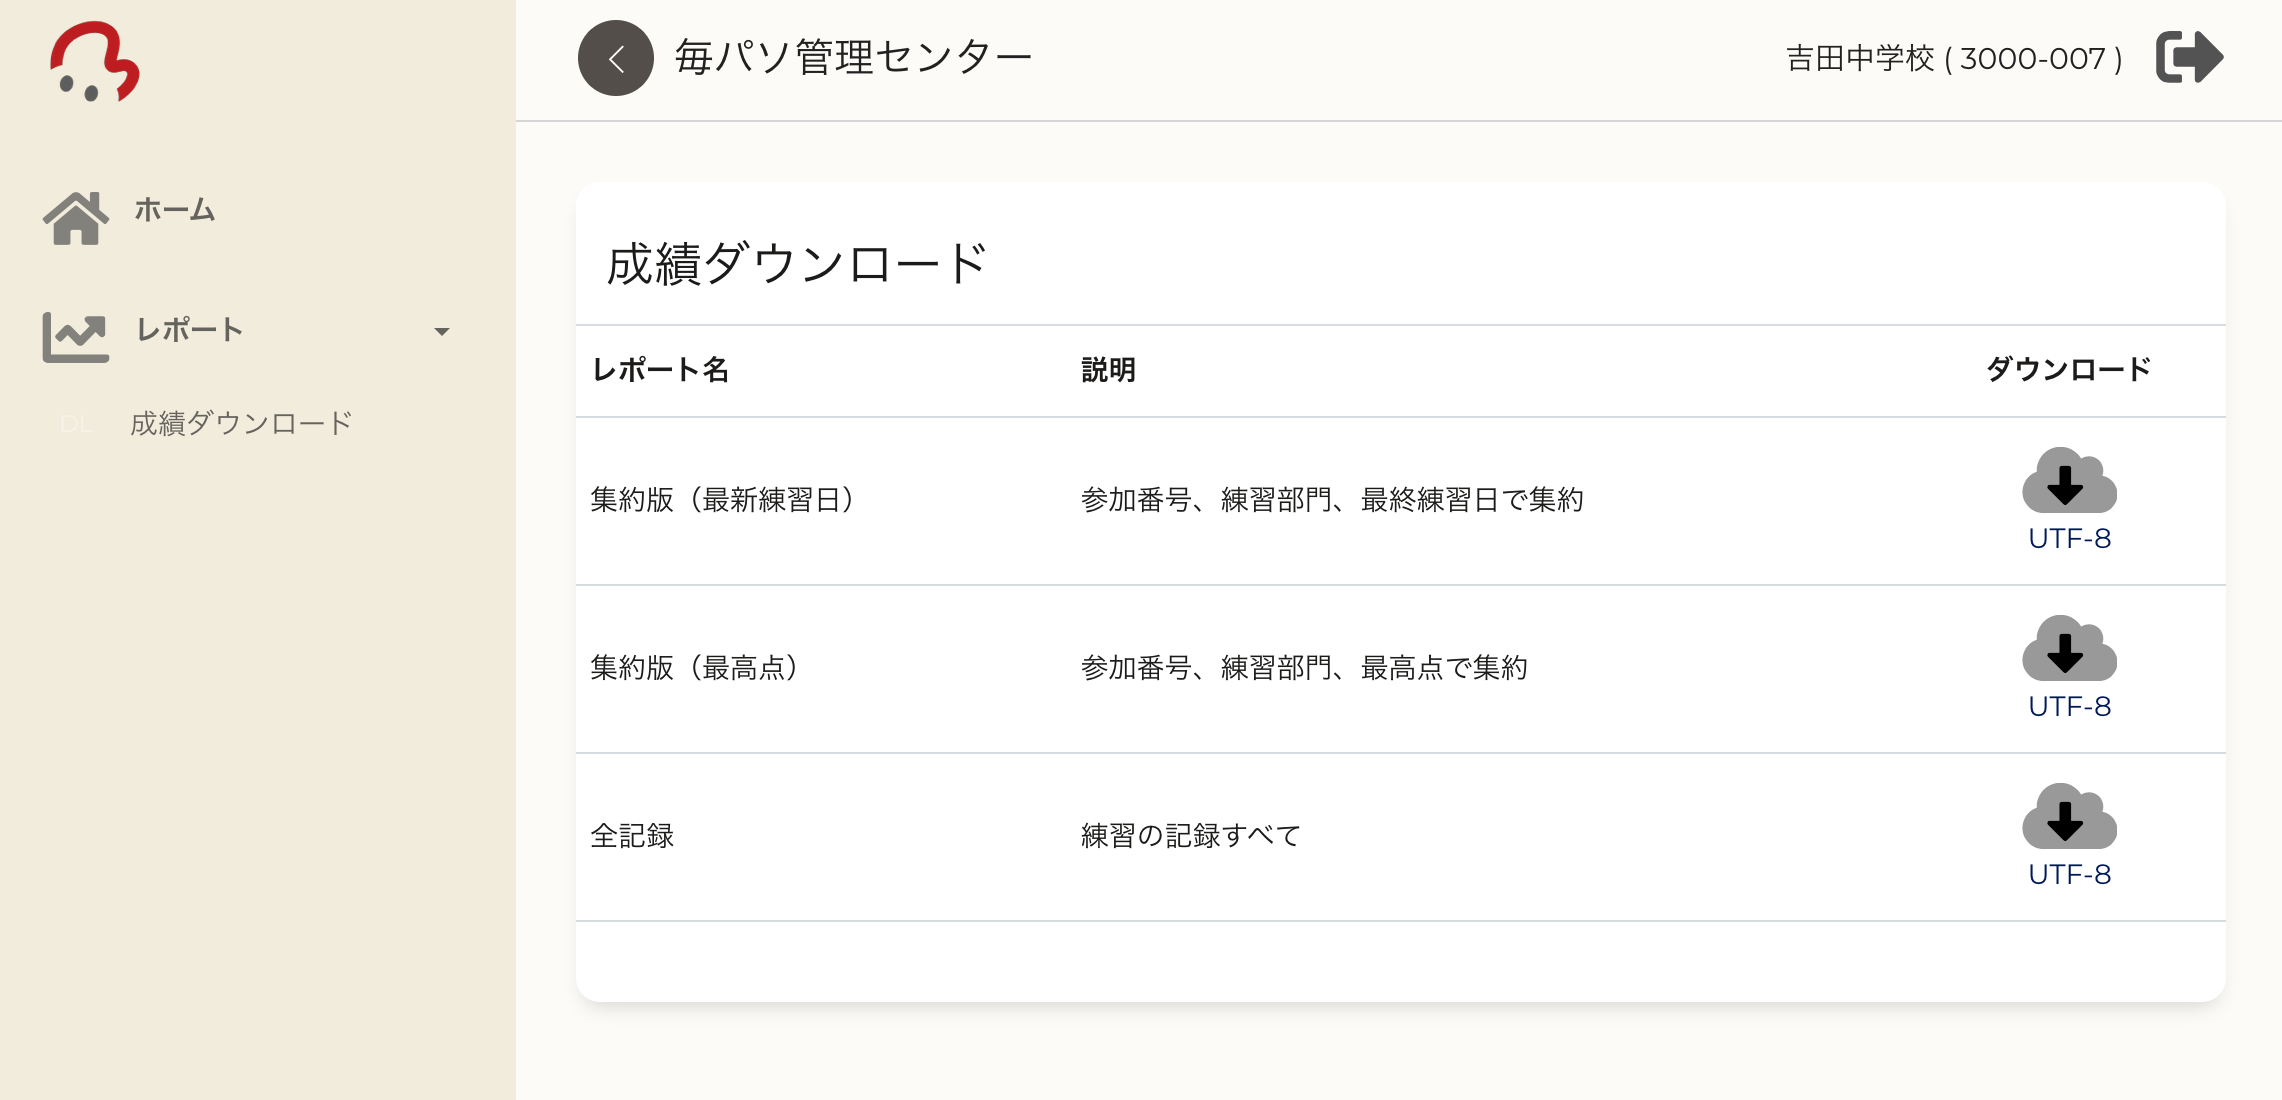 タイピング練習アプリ 無料開放 学校限定 日本パソコン能力検定委員会のプレスリリース 共同通信prワイヤー